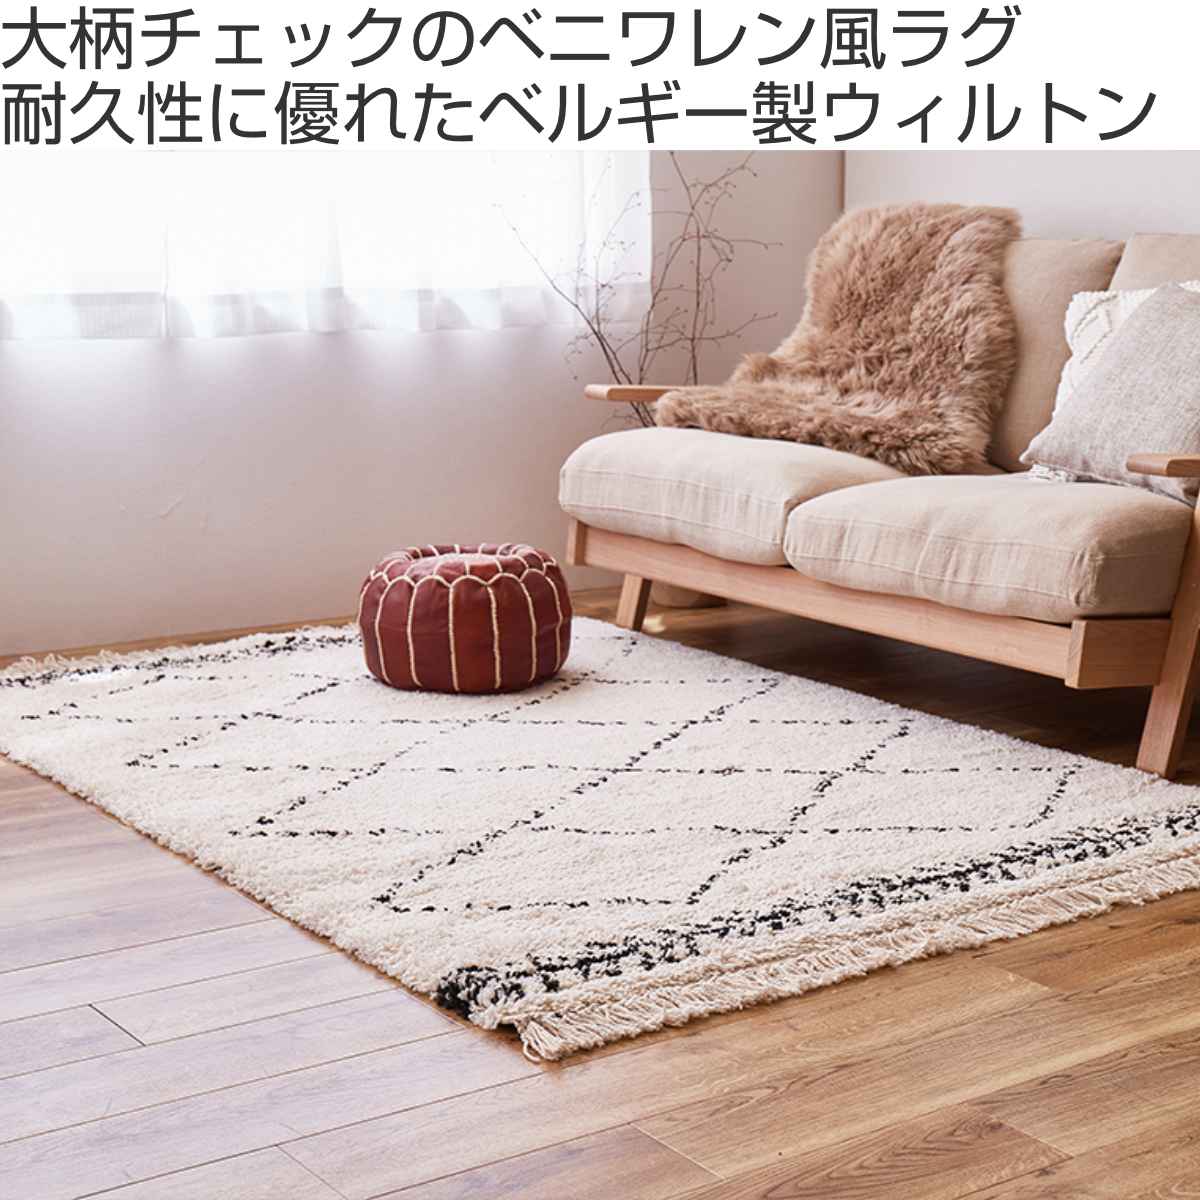 家具・インテリアベニワレン 87×63 - ラグ・カーペット